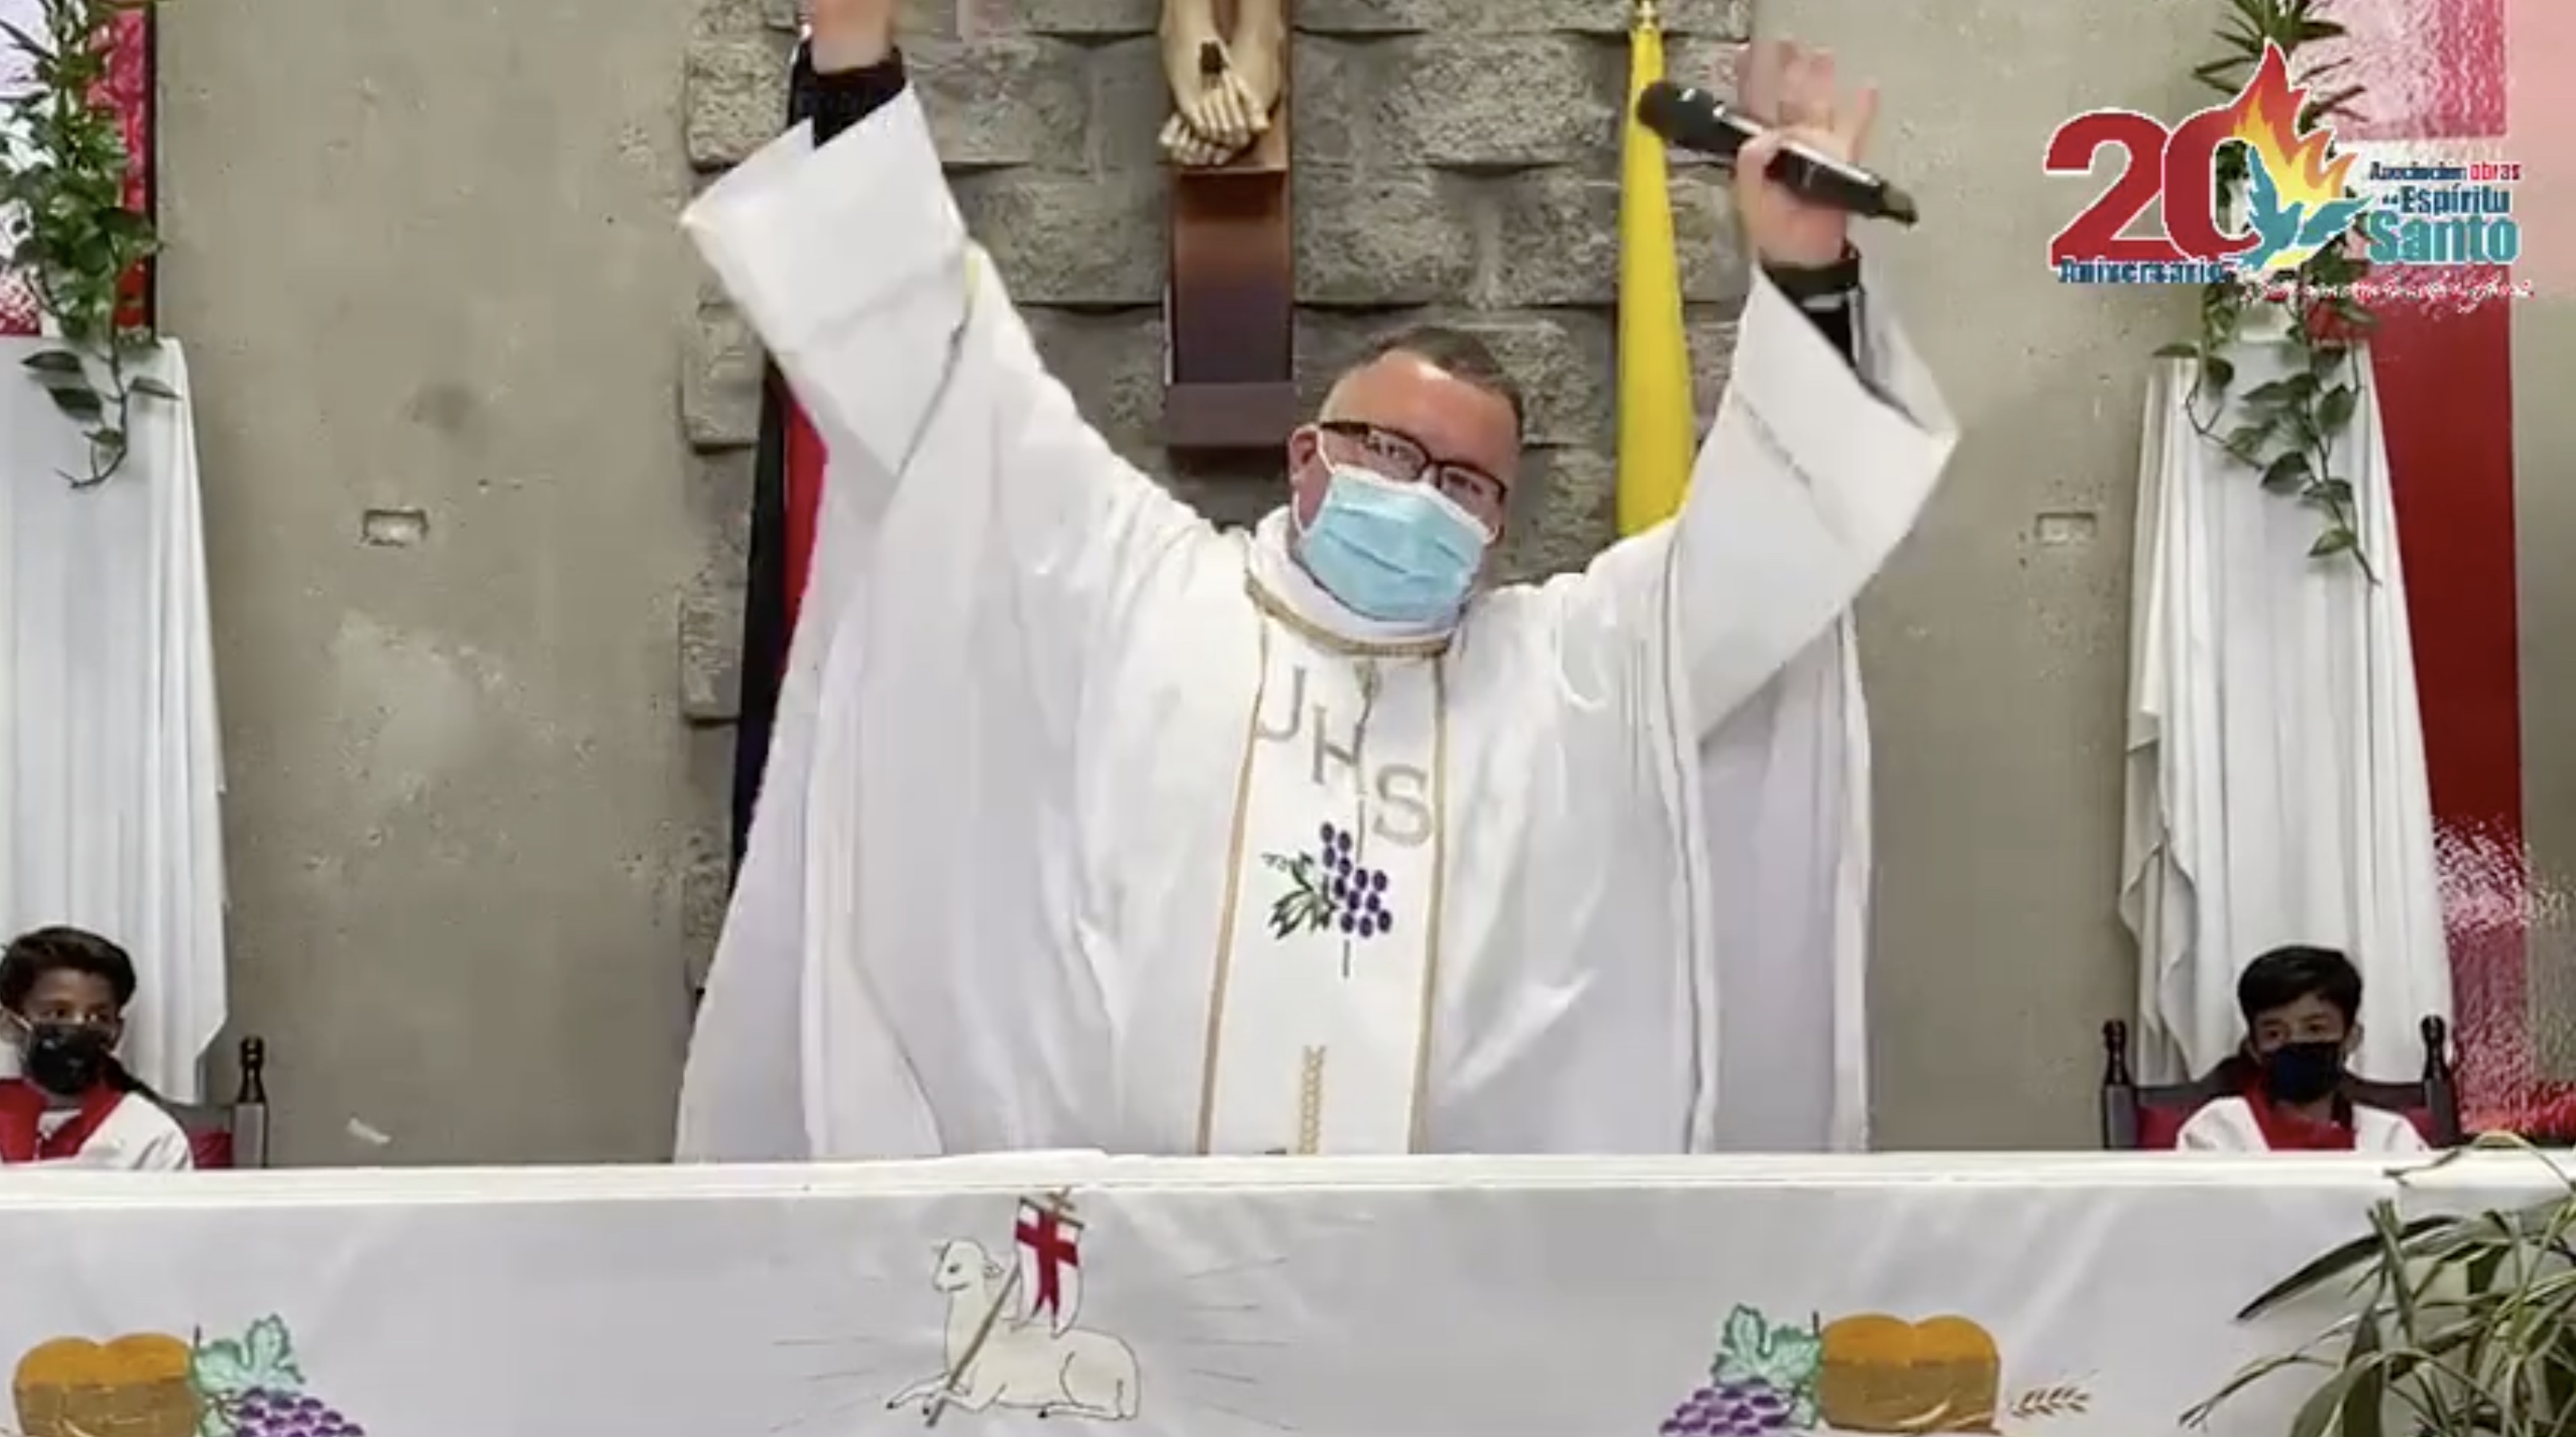 Escucha la canción de un sacerdote contra el coronavirus - CNN Video